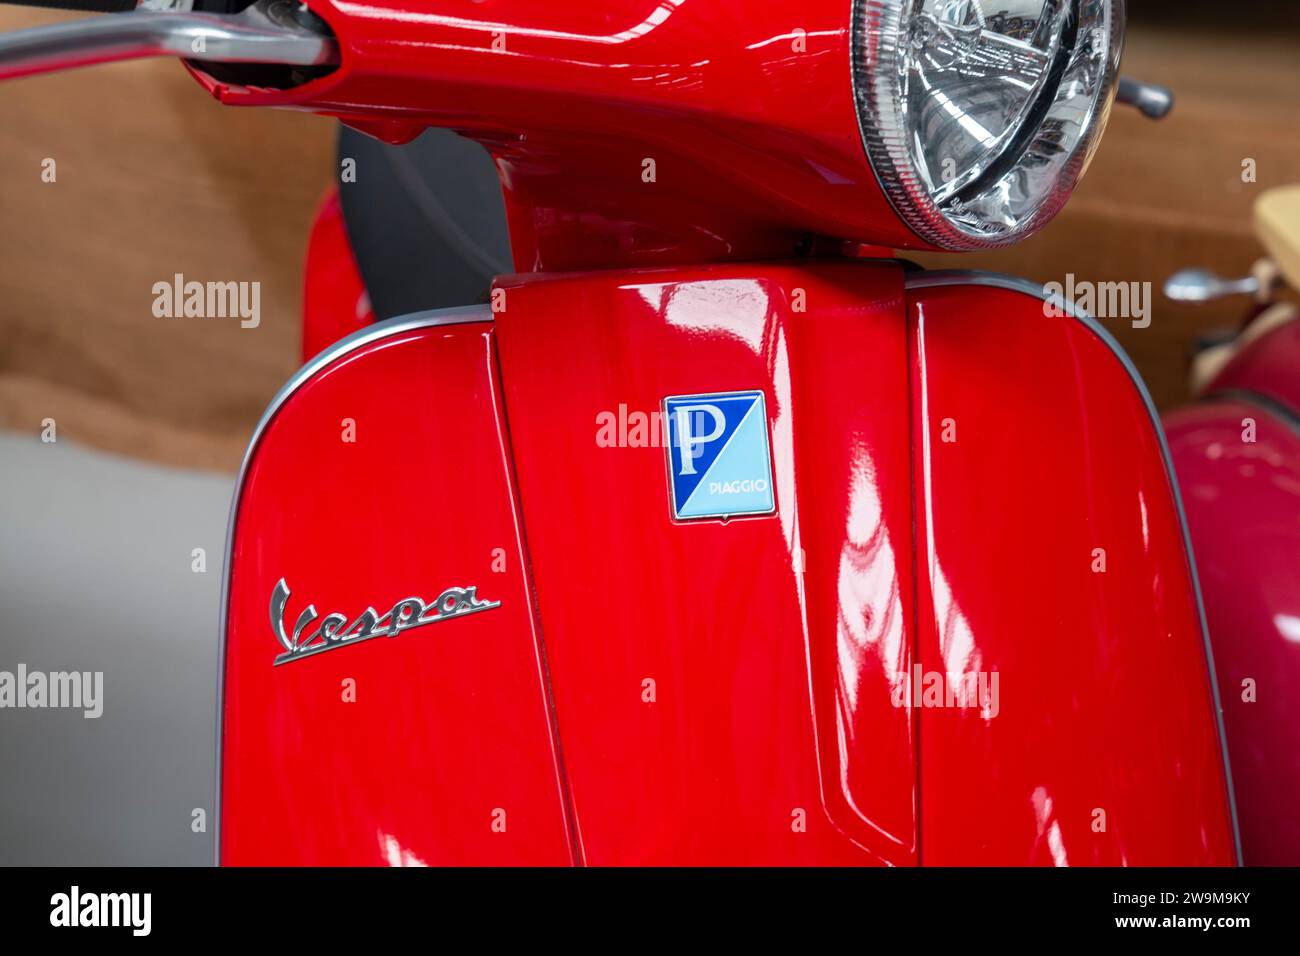 Red Vespa Piaggio LX 50 scooter Stock Photo